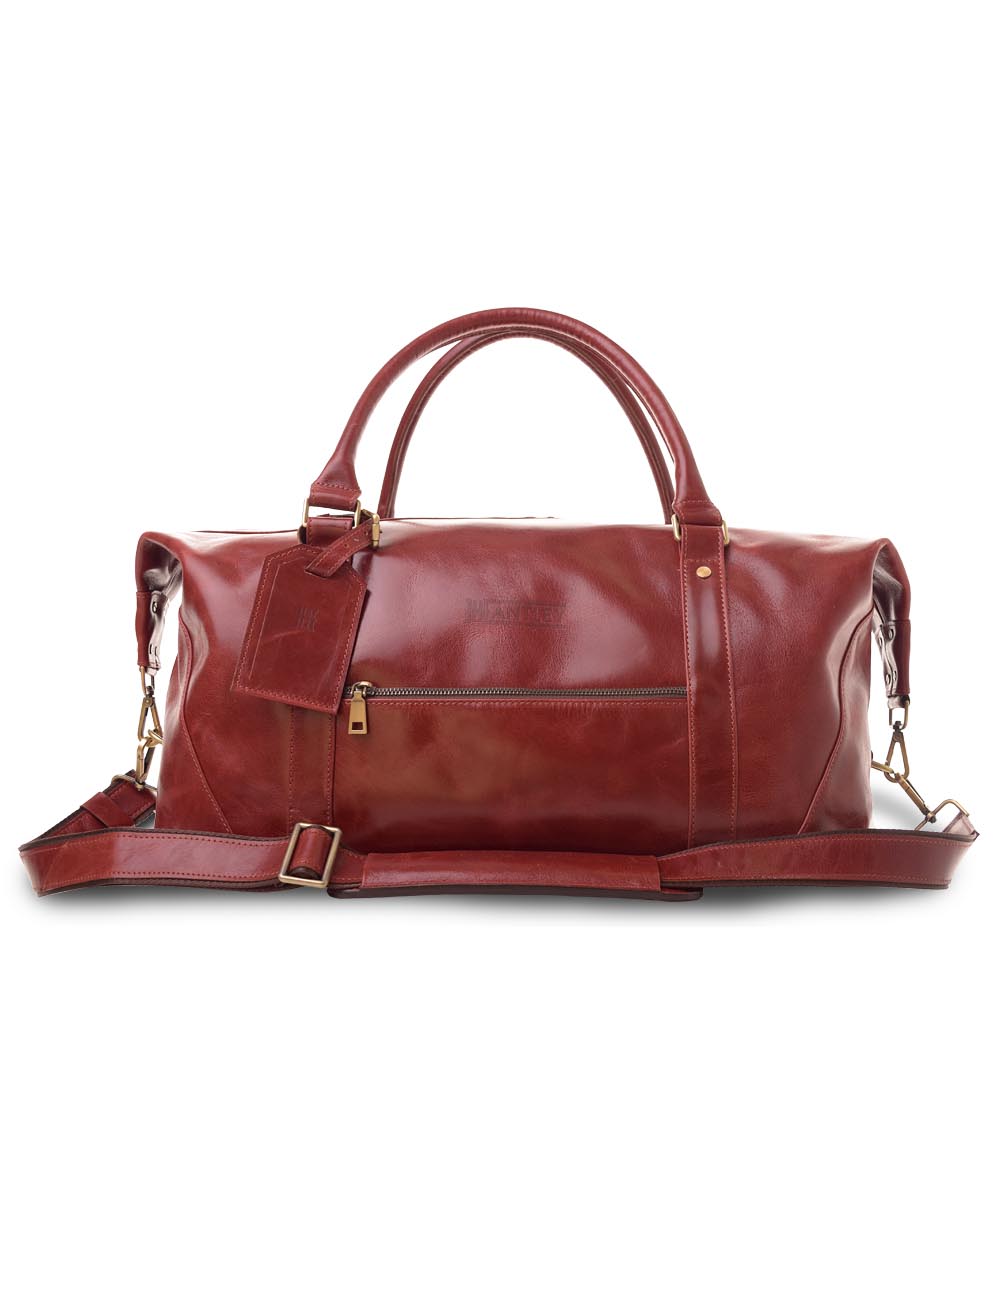 Дорожная сумка мужская Hantley Grand Tour коричнево-красная, 25х50х25 см